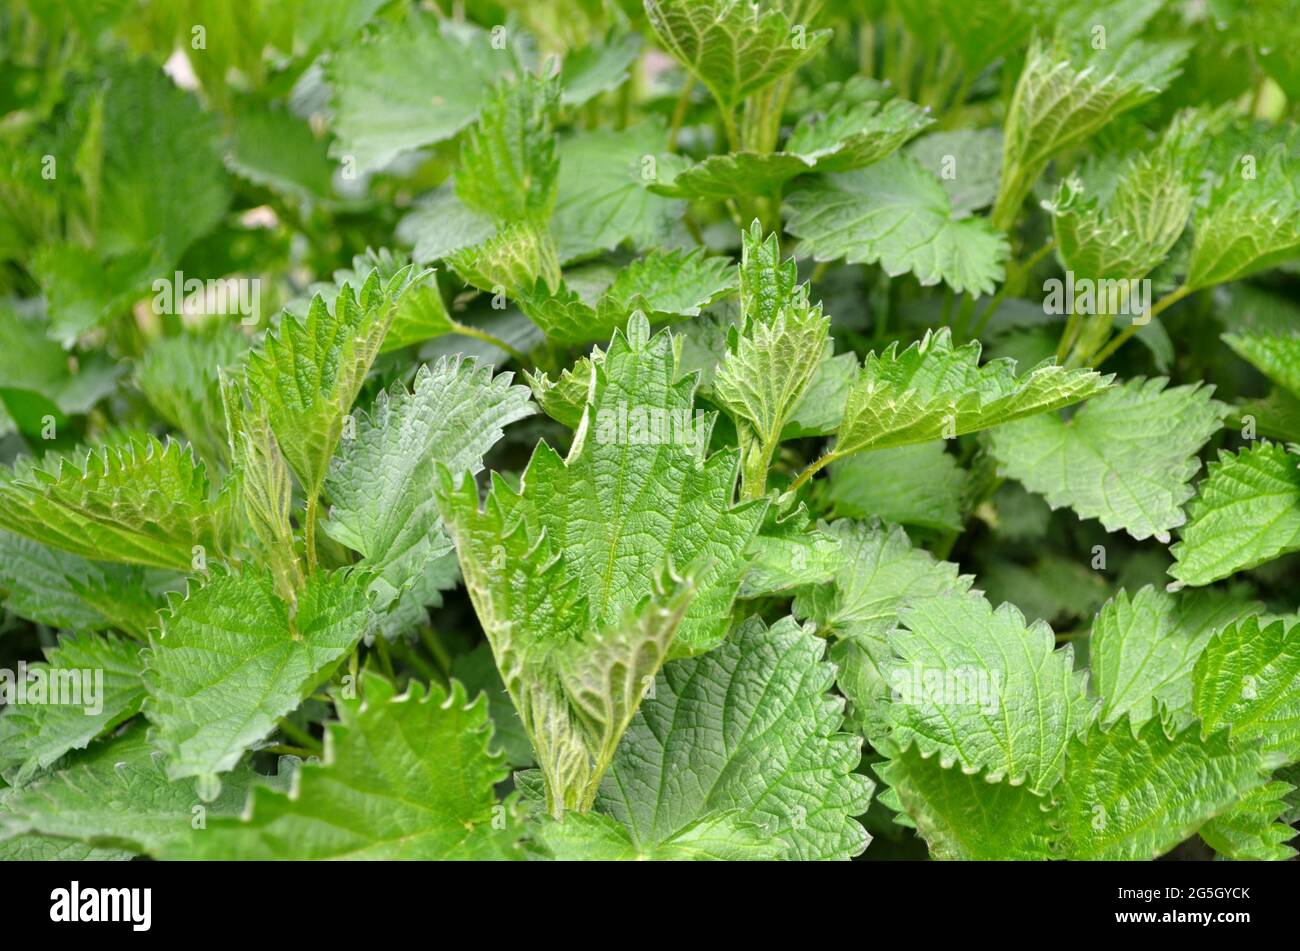 Brennnessel oder Urtica dioica - krautige mehrjährige Heilpflanze in der Familie Urticaceae, selektiver Fokus. Stockfoto